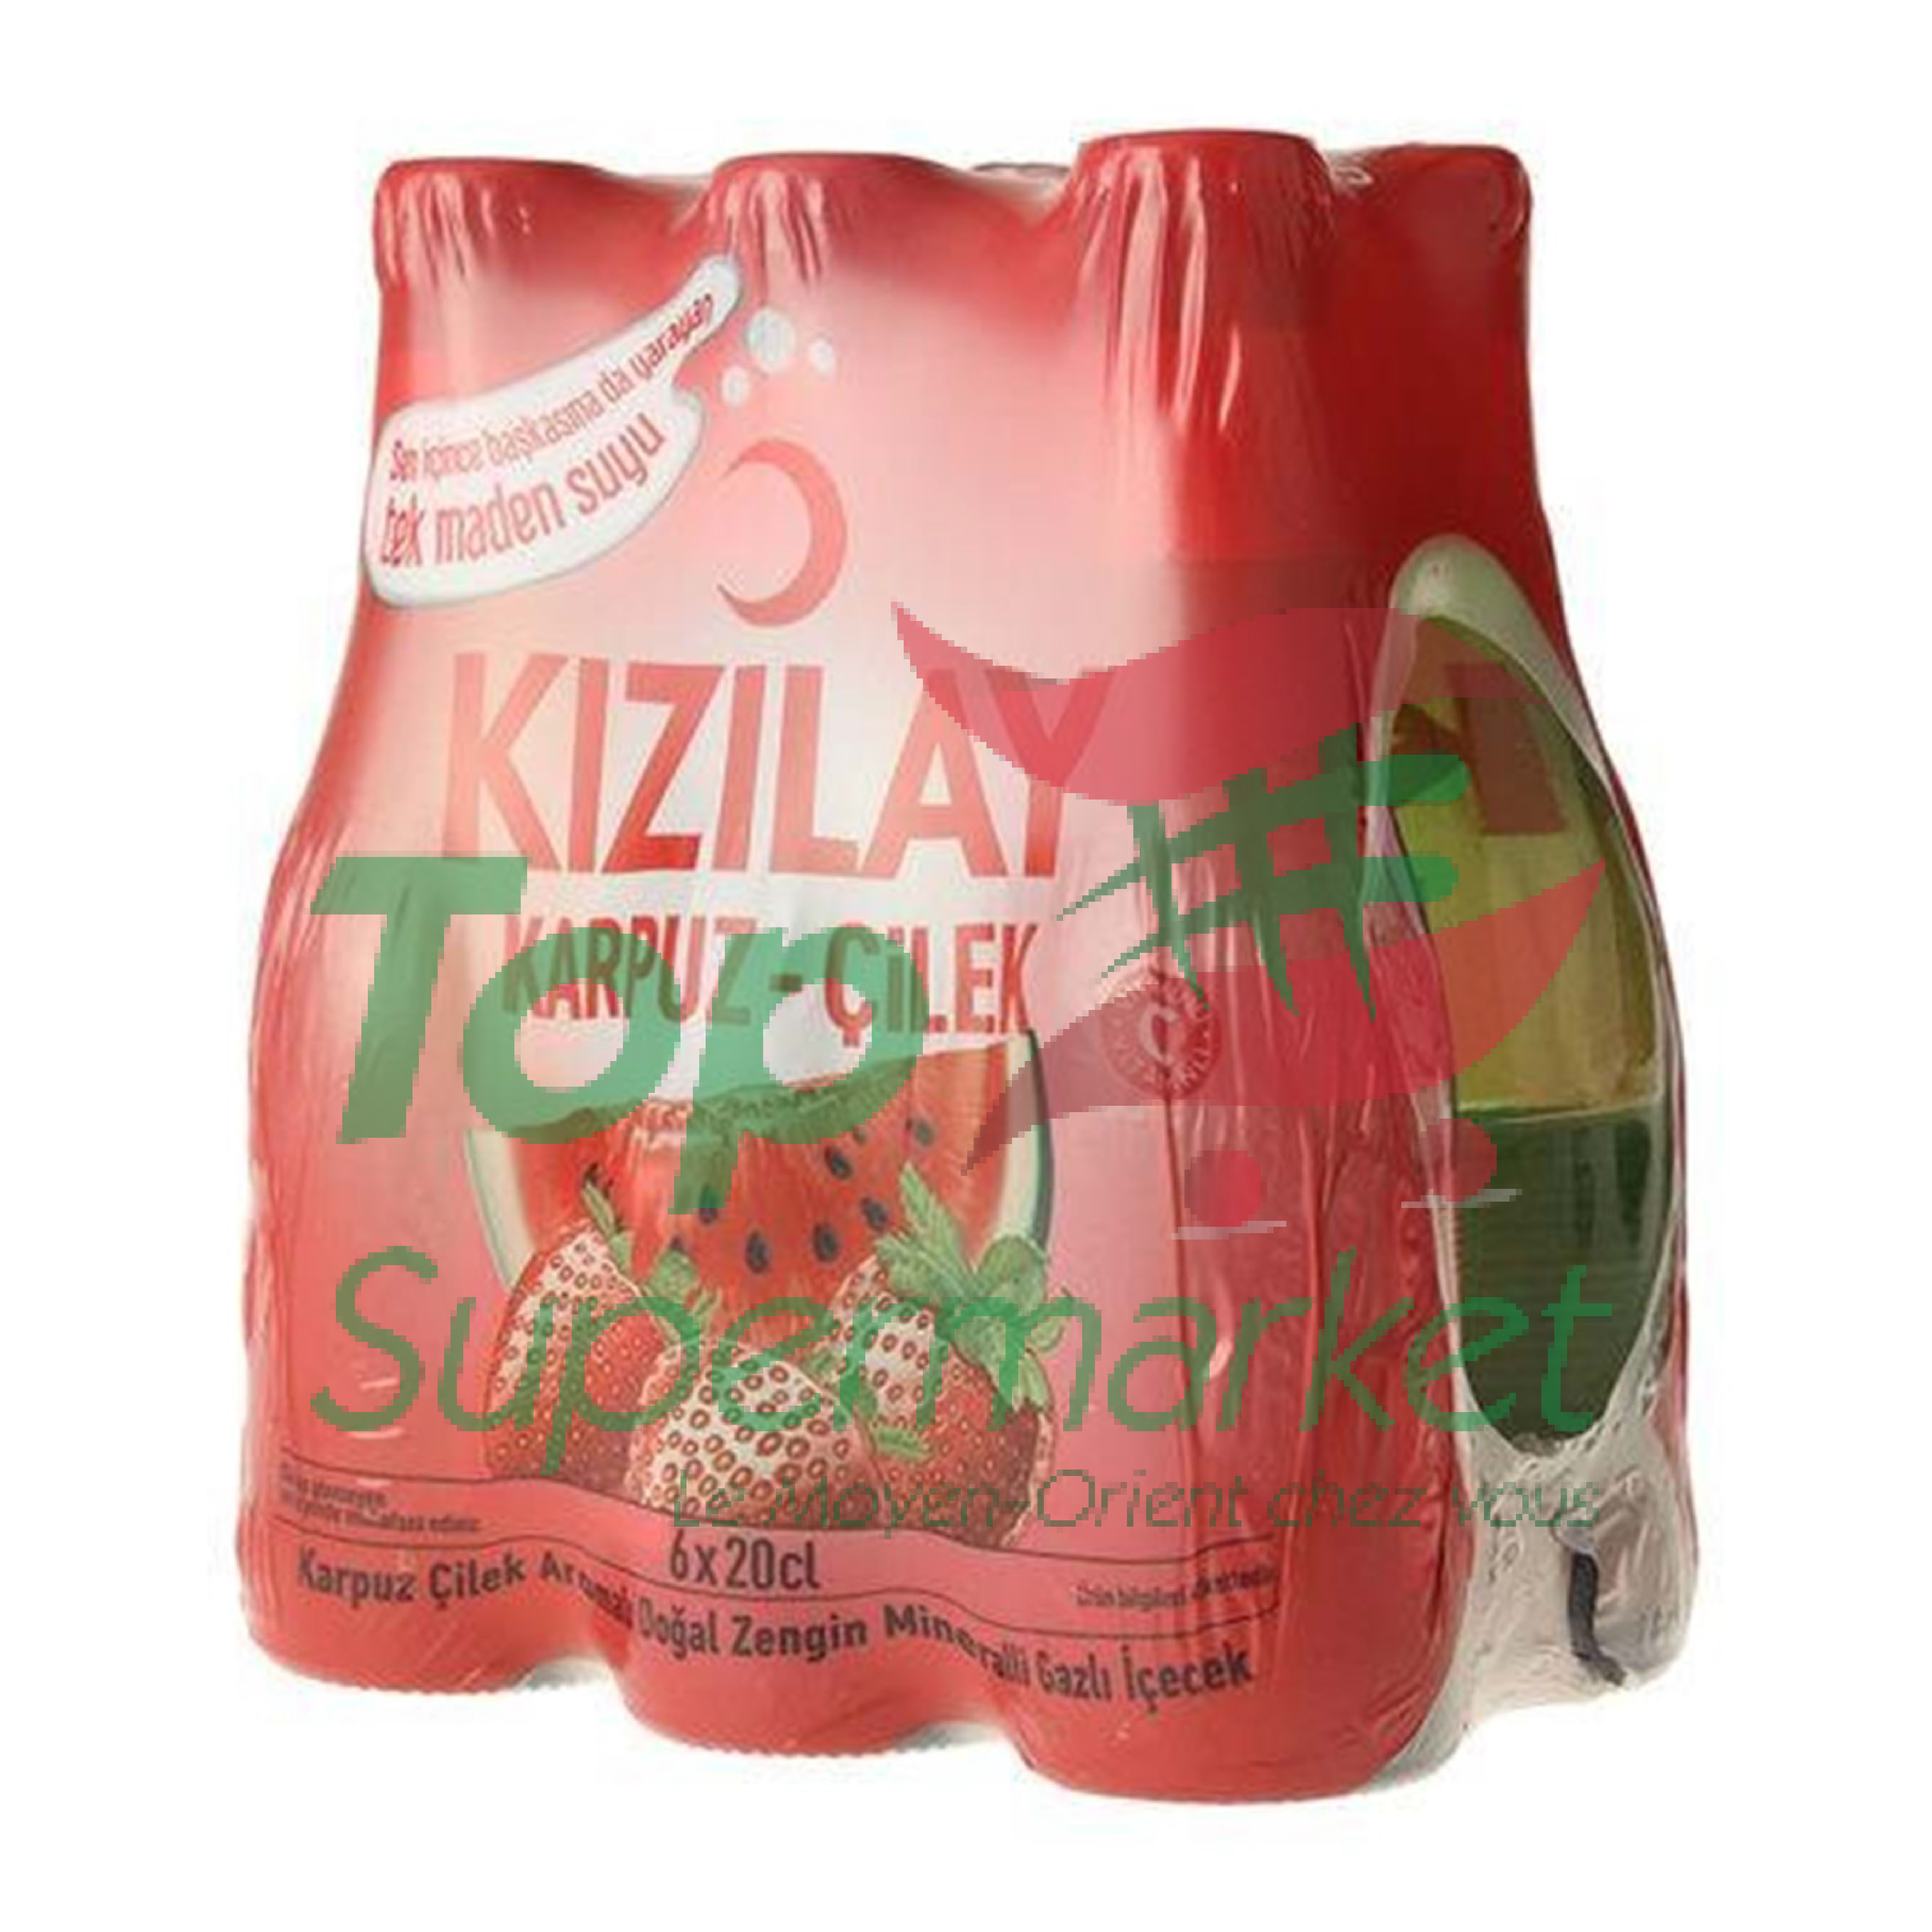 Kizilay pastèque&fraise X6